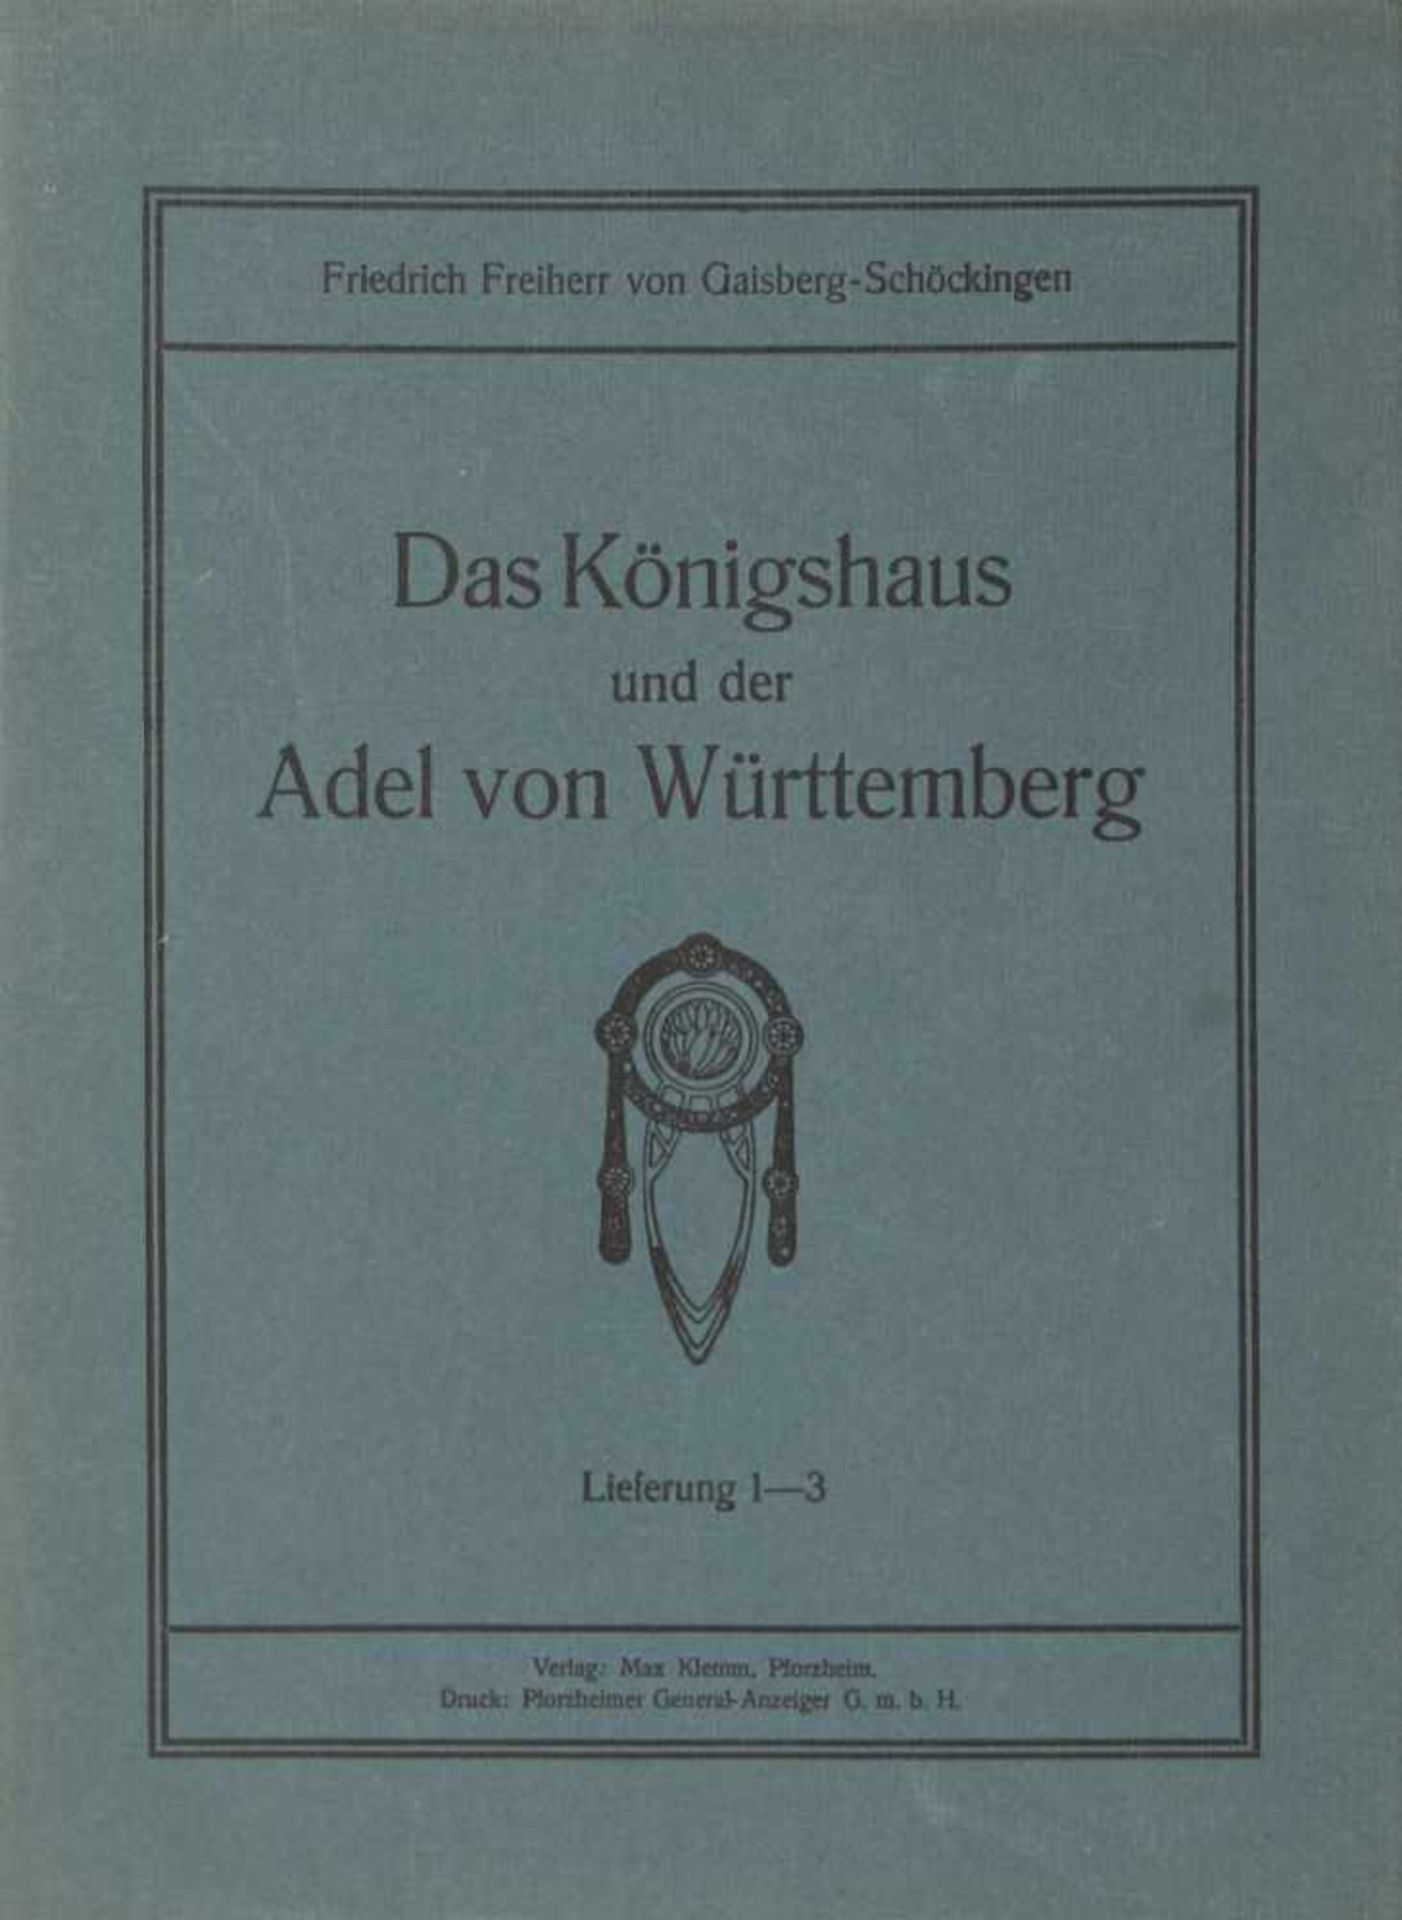 Baden Württemberg. -Gaisberg-Schöckingen, Friedrich Freiherr von: (Hrsgr.),Das Königshaus und der